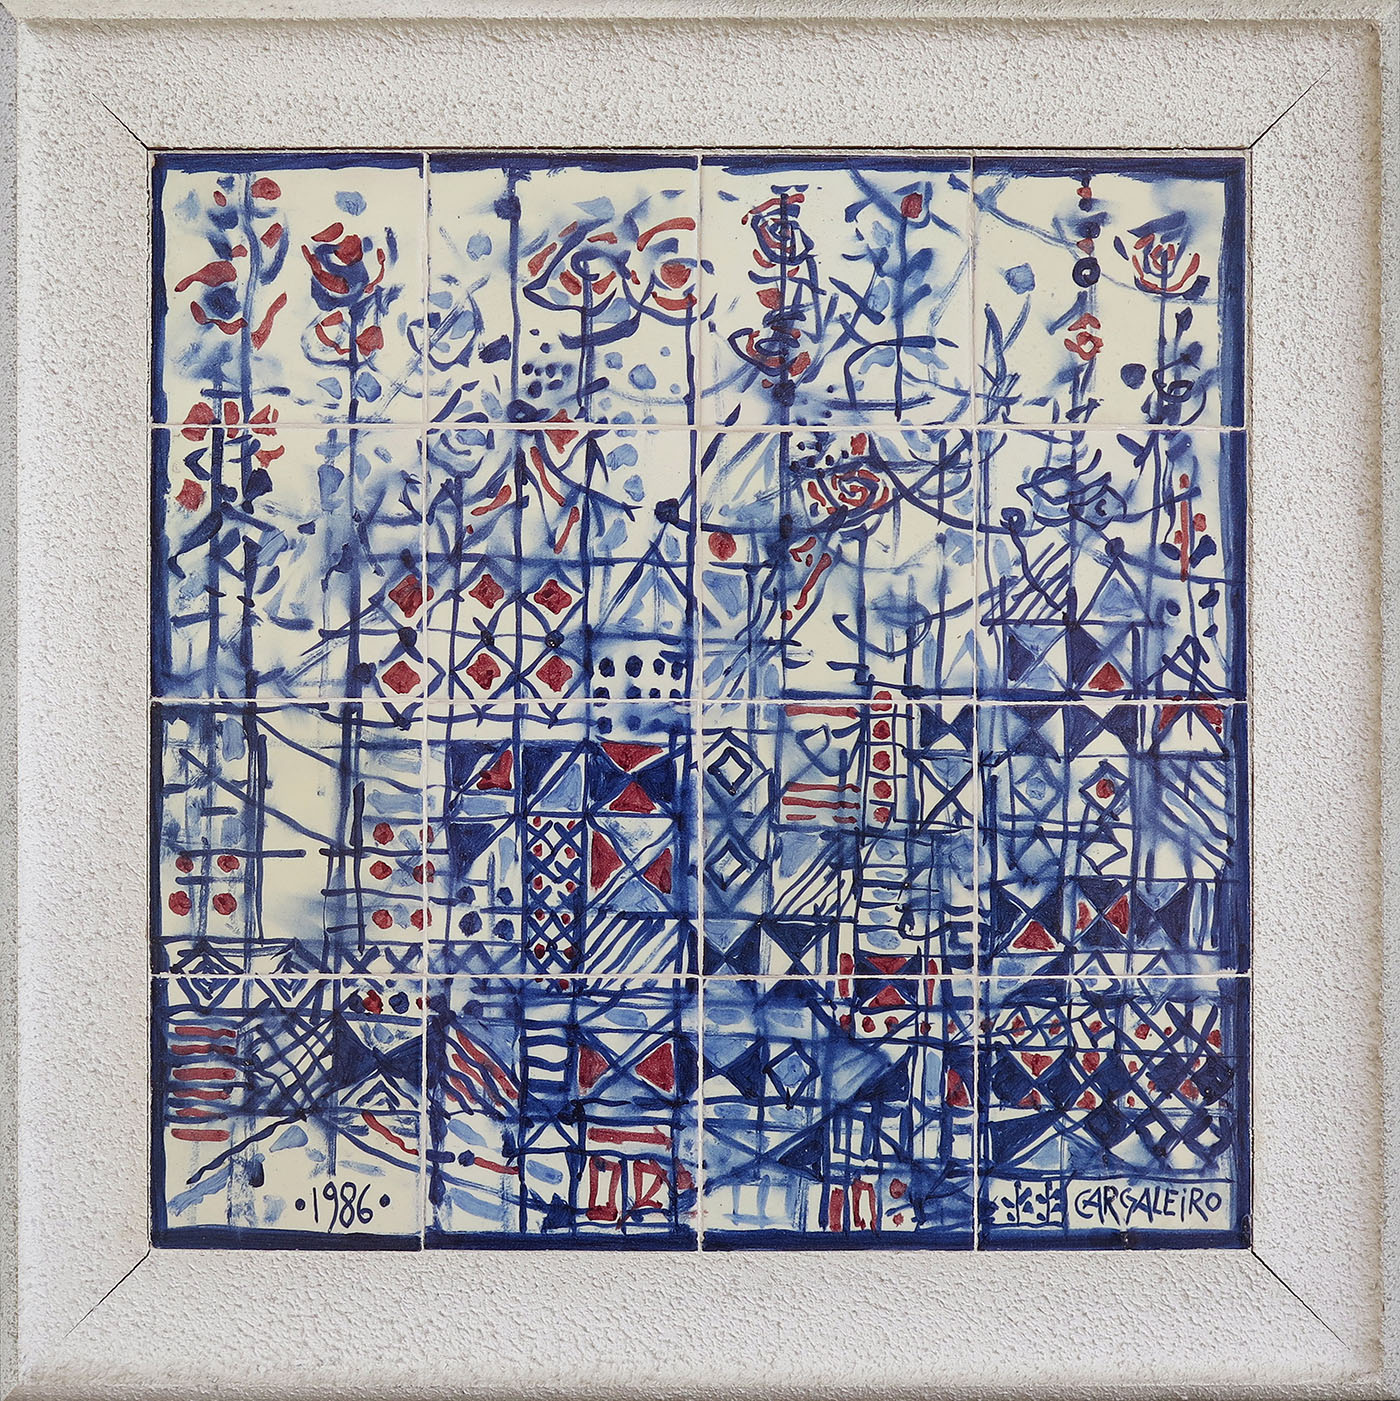 Painel de 16 azulejos vidrados e policromados, 56,5 x 56,5 cm, 1986